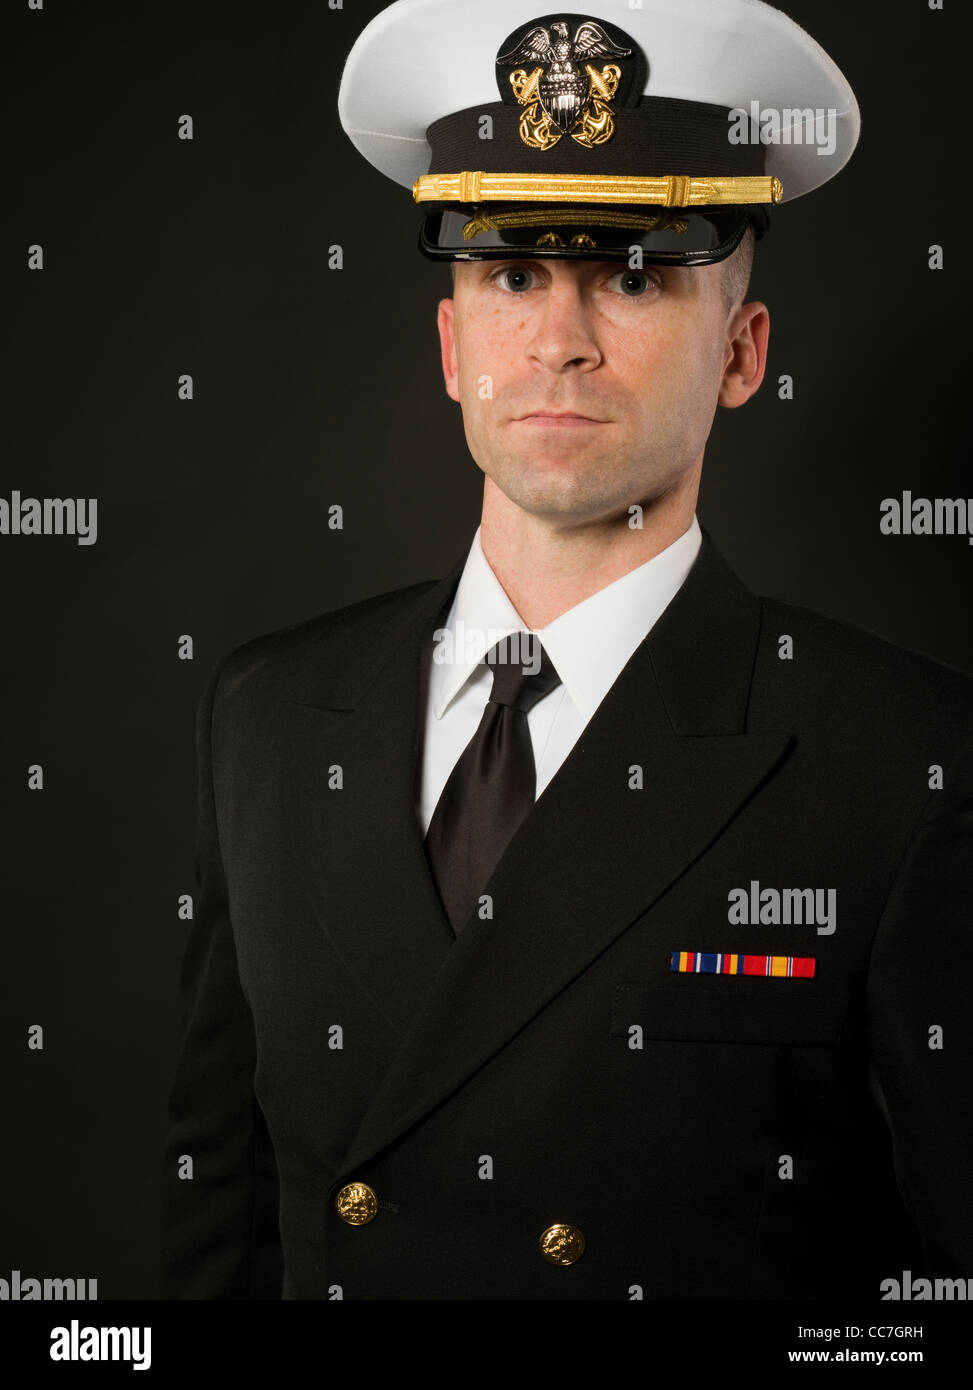 United States Navy Officer en tenue de service uniformes bleus avec combinaison couvercle ( hat ) Banque D'Images